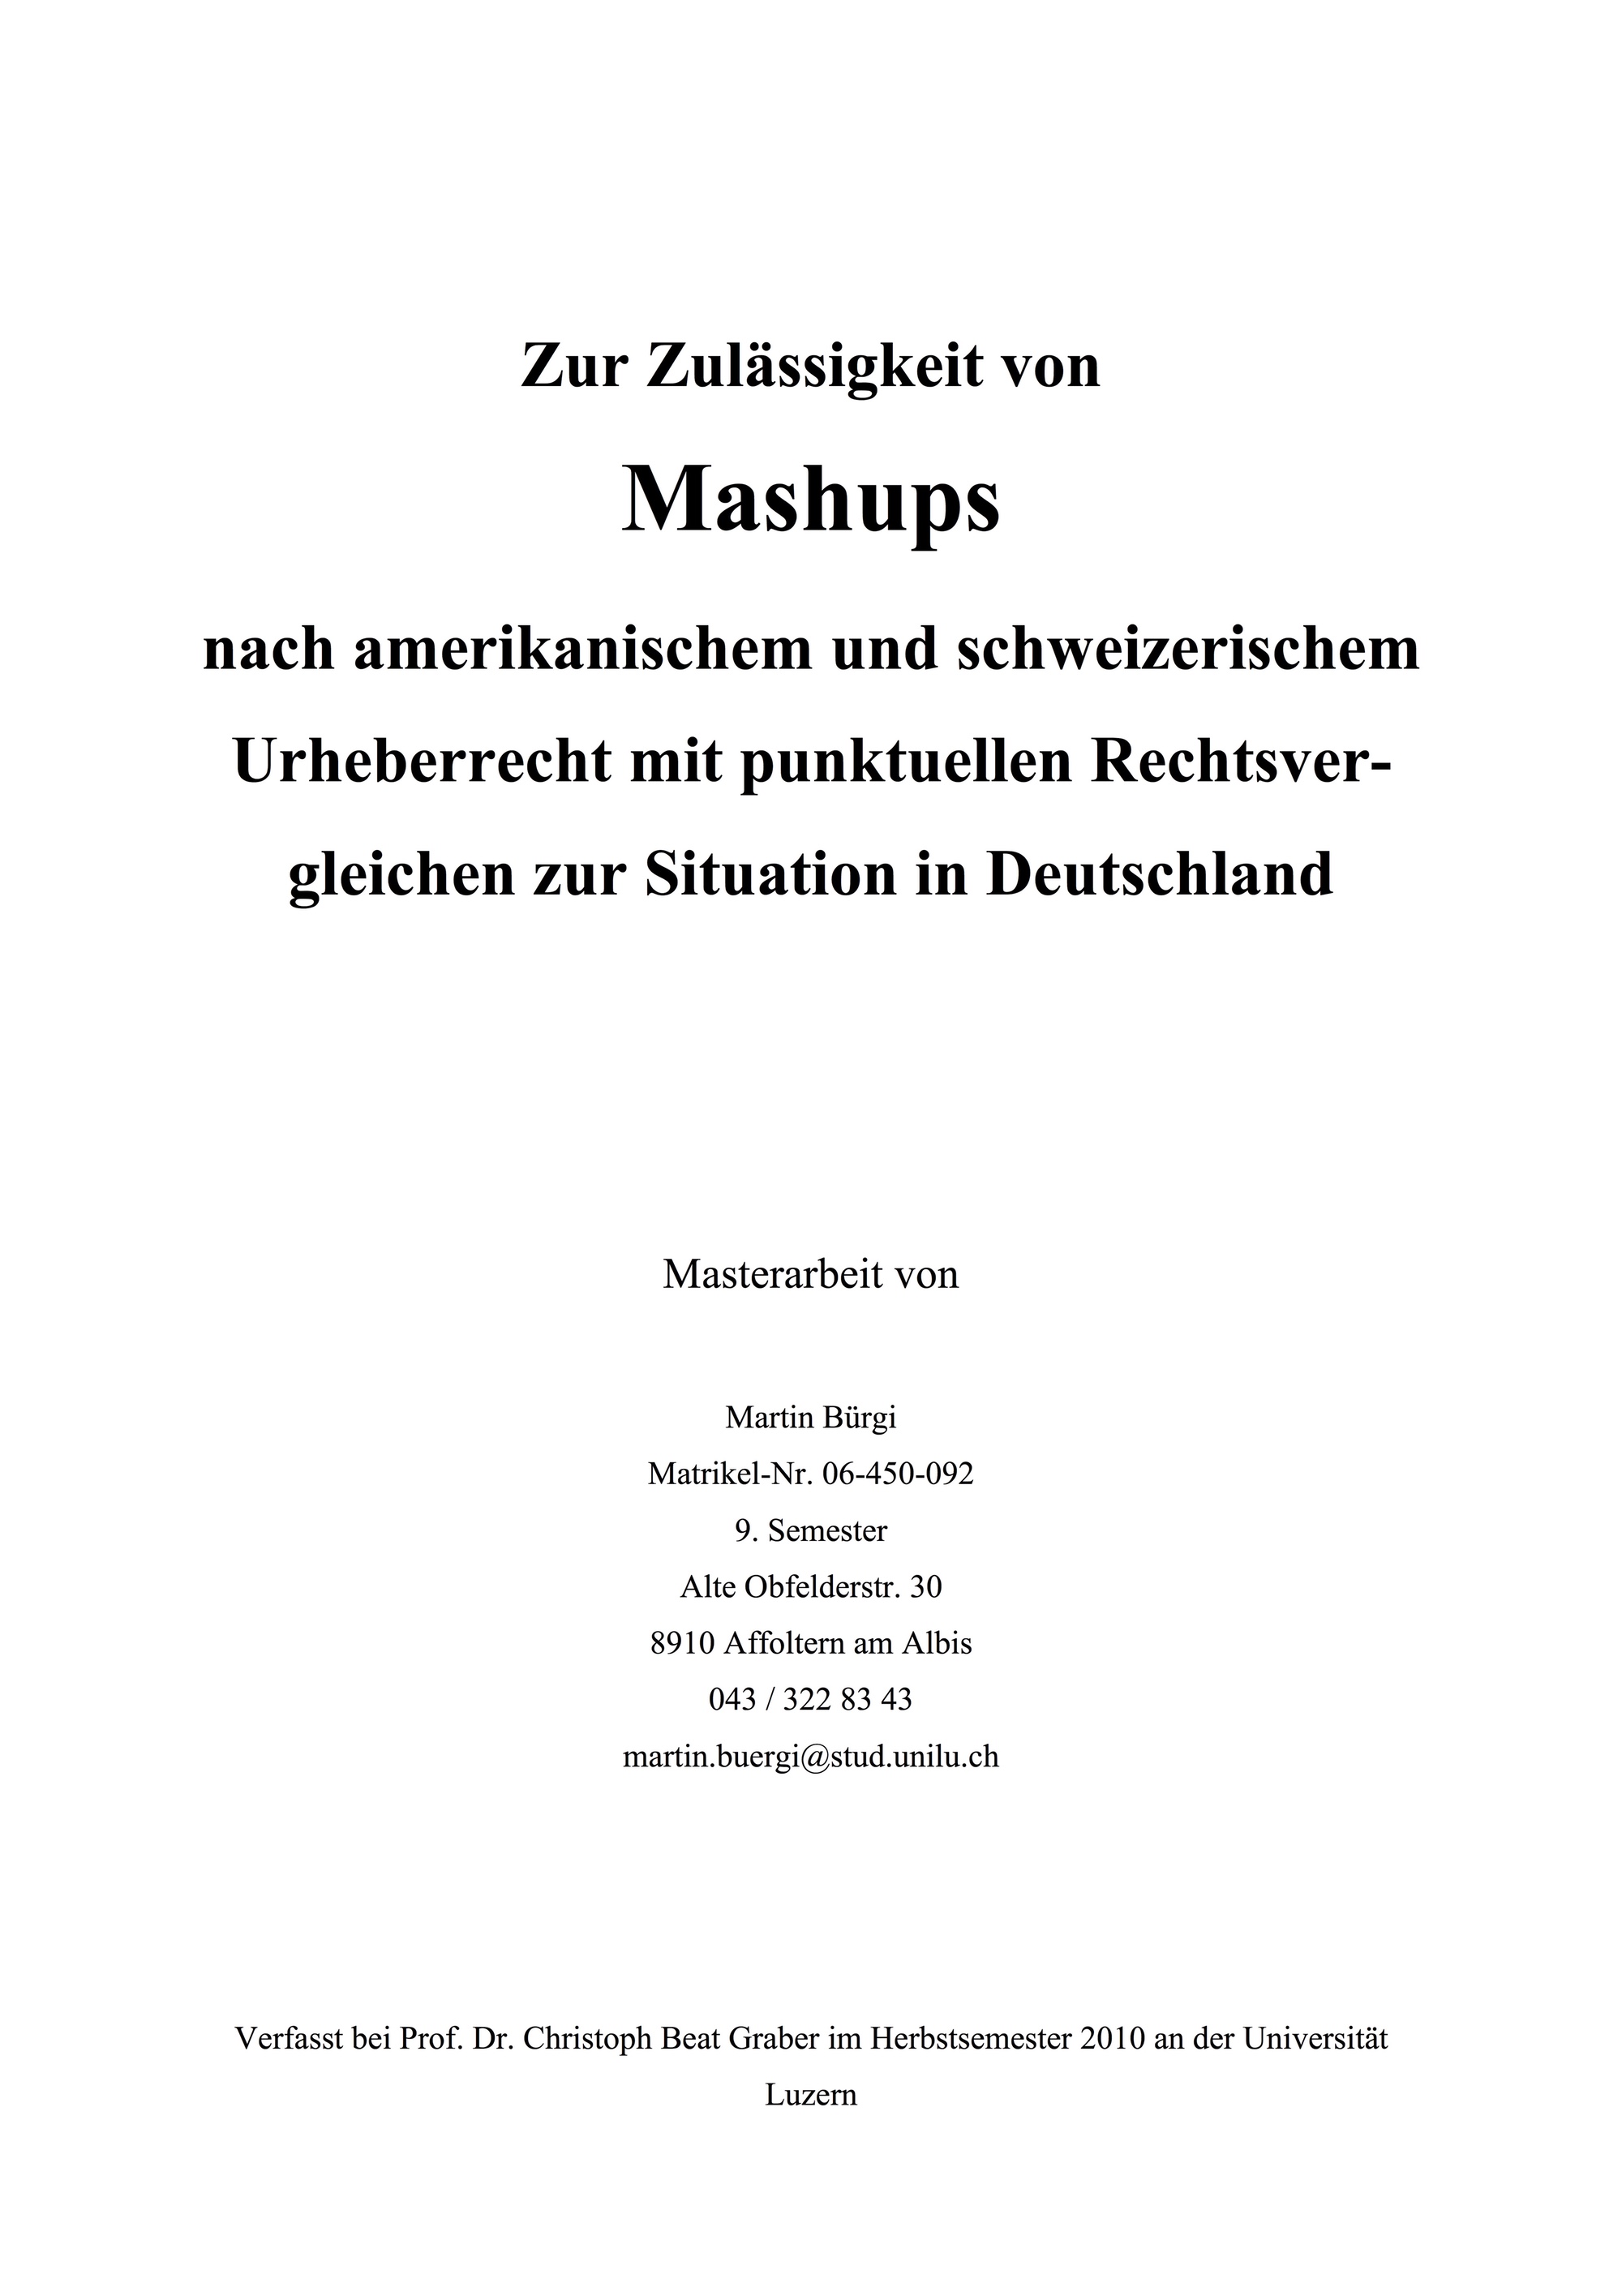 Zur Zulässigkeit von Mashups nach amerikanischem und schweizerischem Urheberrecht mit punktuellen Rechtsvergleichen zur Situation in Deutschland